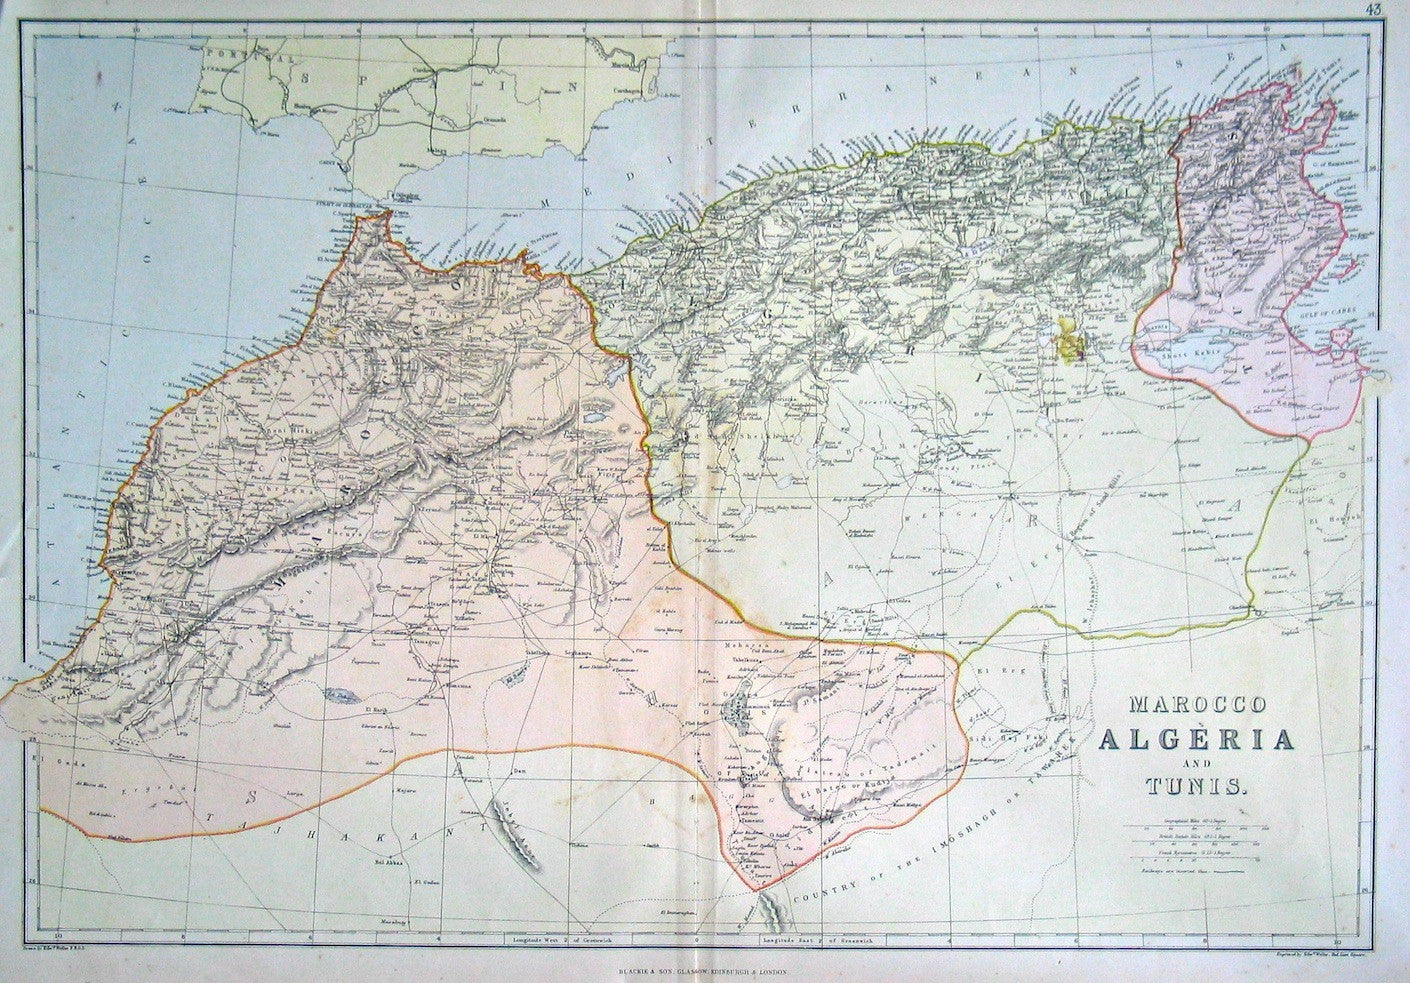 Marocco(sic), Algeria and Tunis